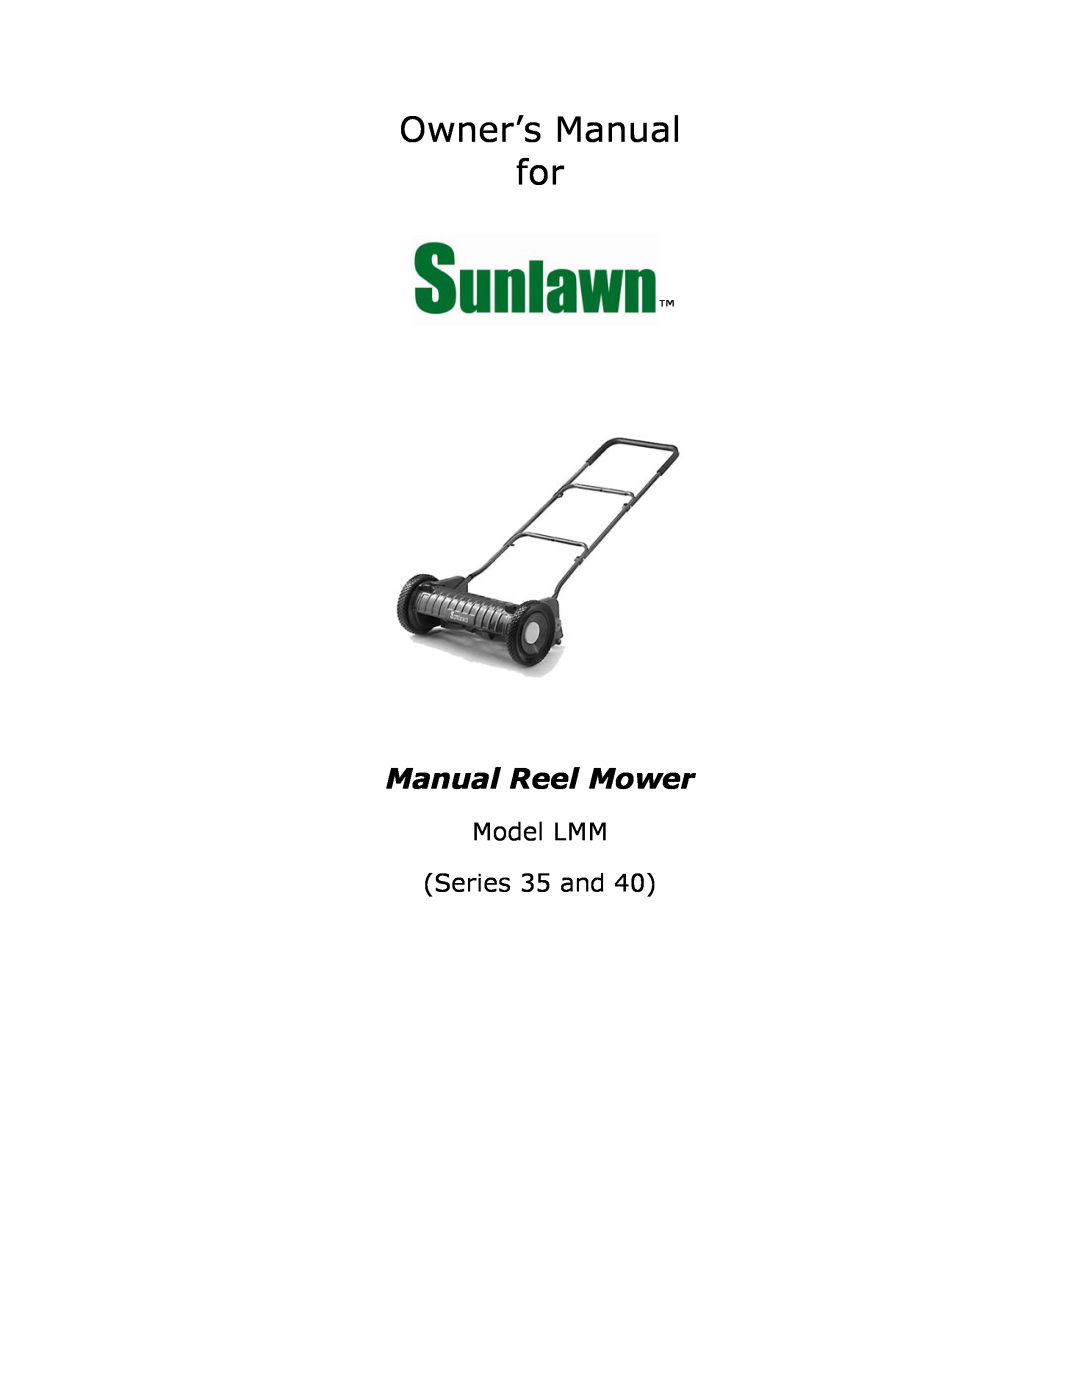 Sun Lawn owner manual Manual Reel Mower, Model LMM Series 35 and 